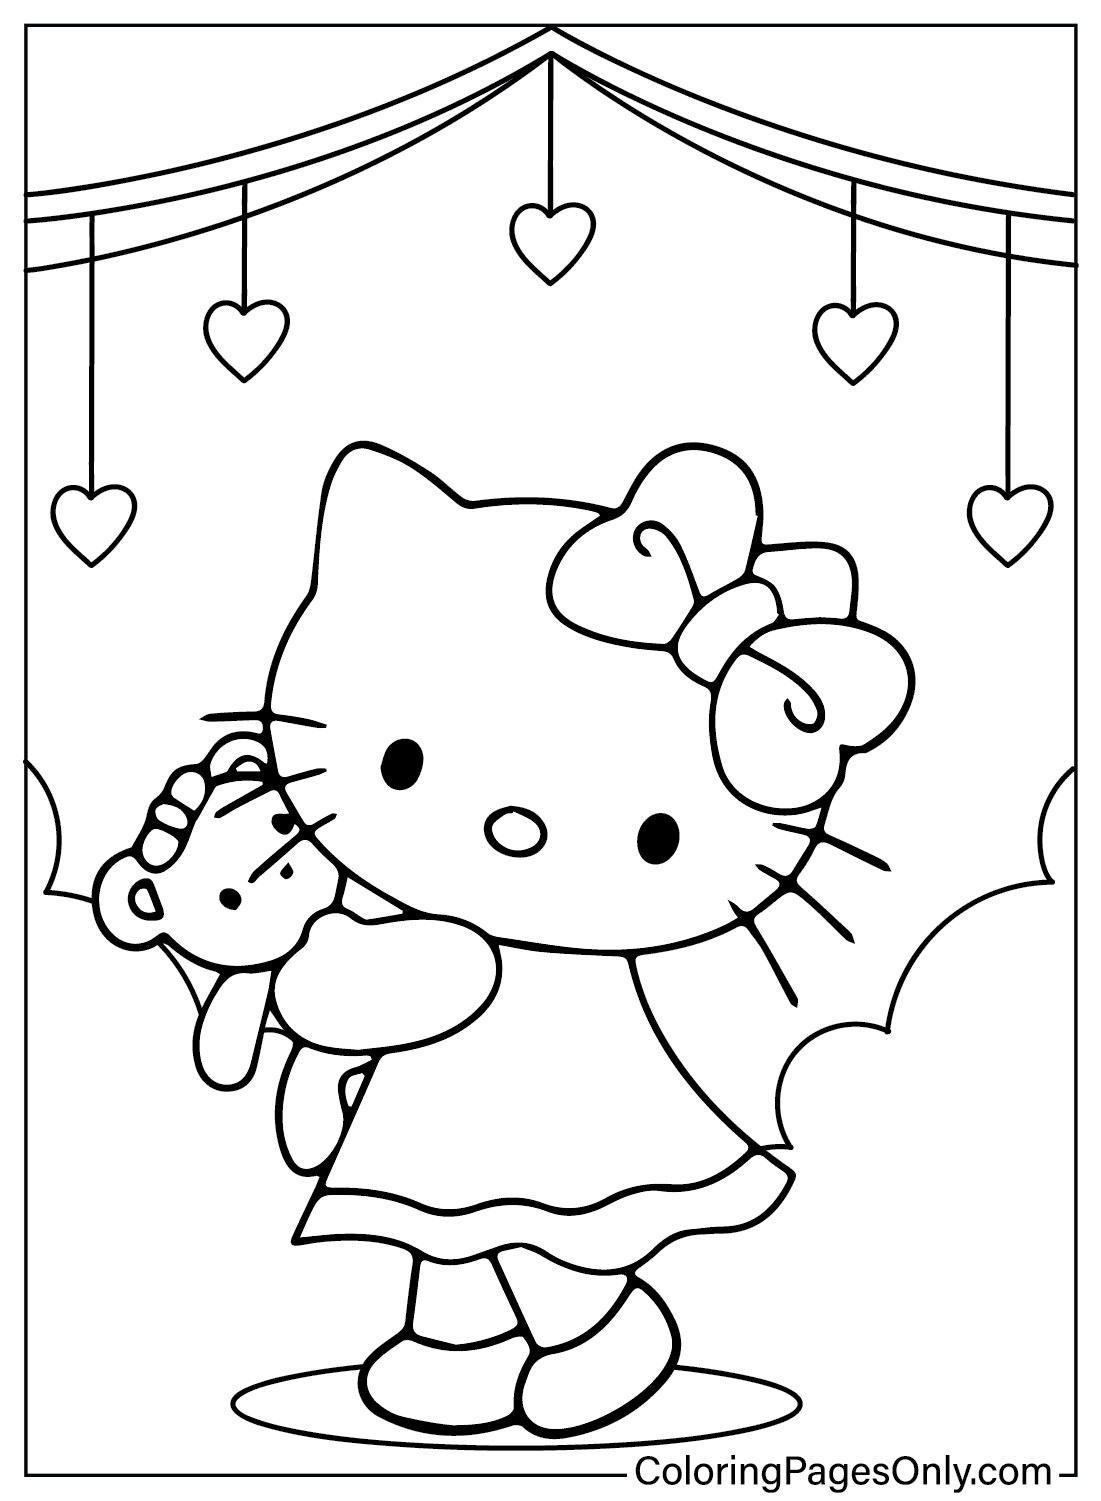 Leuke Hello Kitty kleurplaat van Hello Kitty